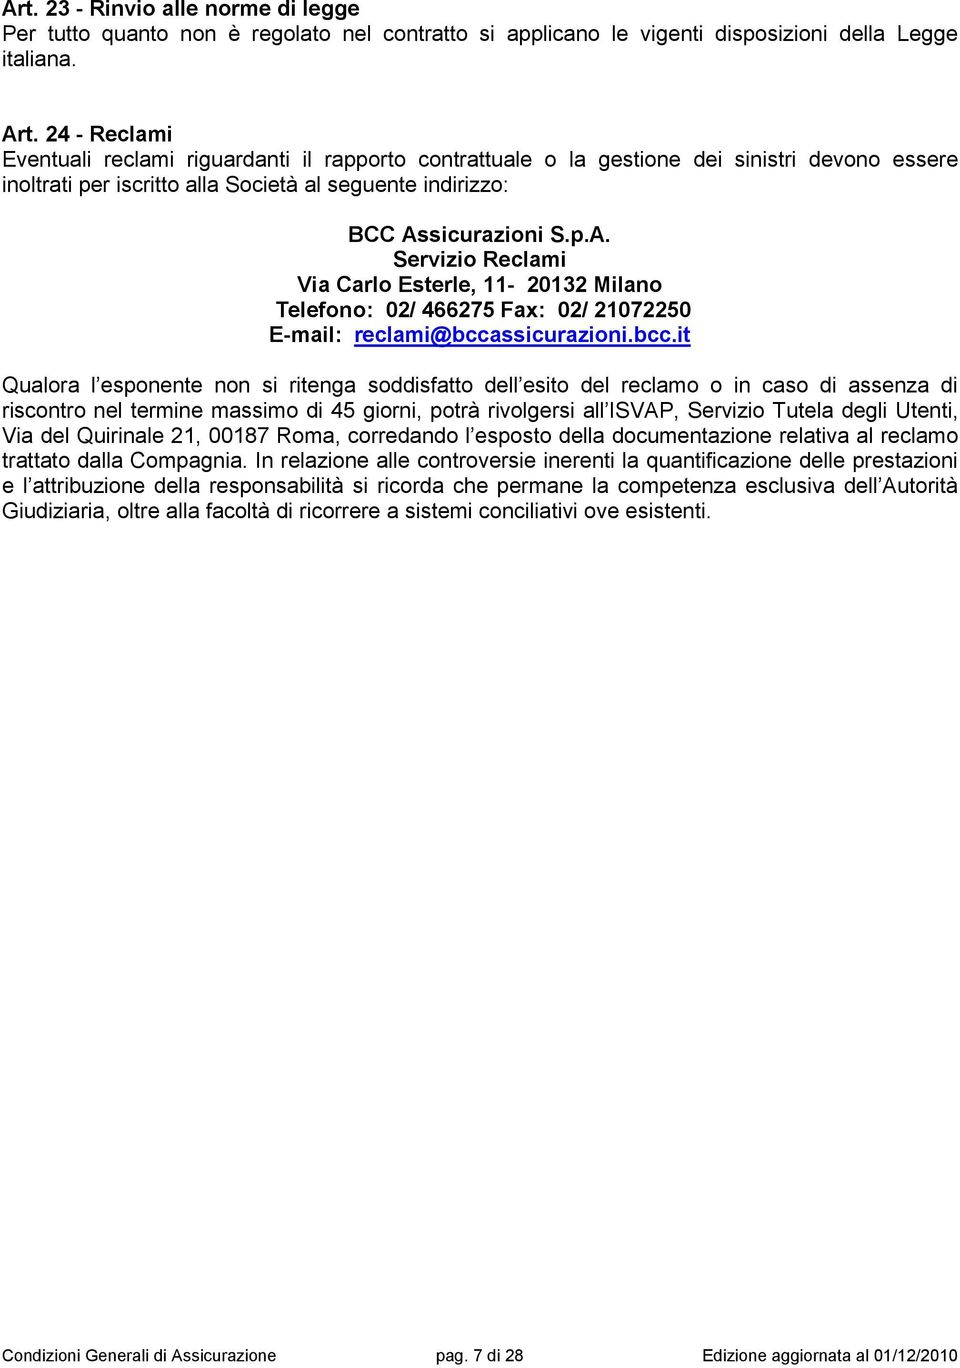 sicurazioni S.p.A. Servizio Reclami Via Carlo Esterle, 11-20132 Milano Telefono: 02/ 466275 Fax: 02/ 21072250 E-mail: reclami@bcca